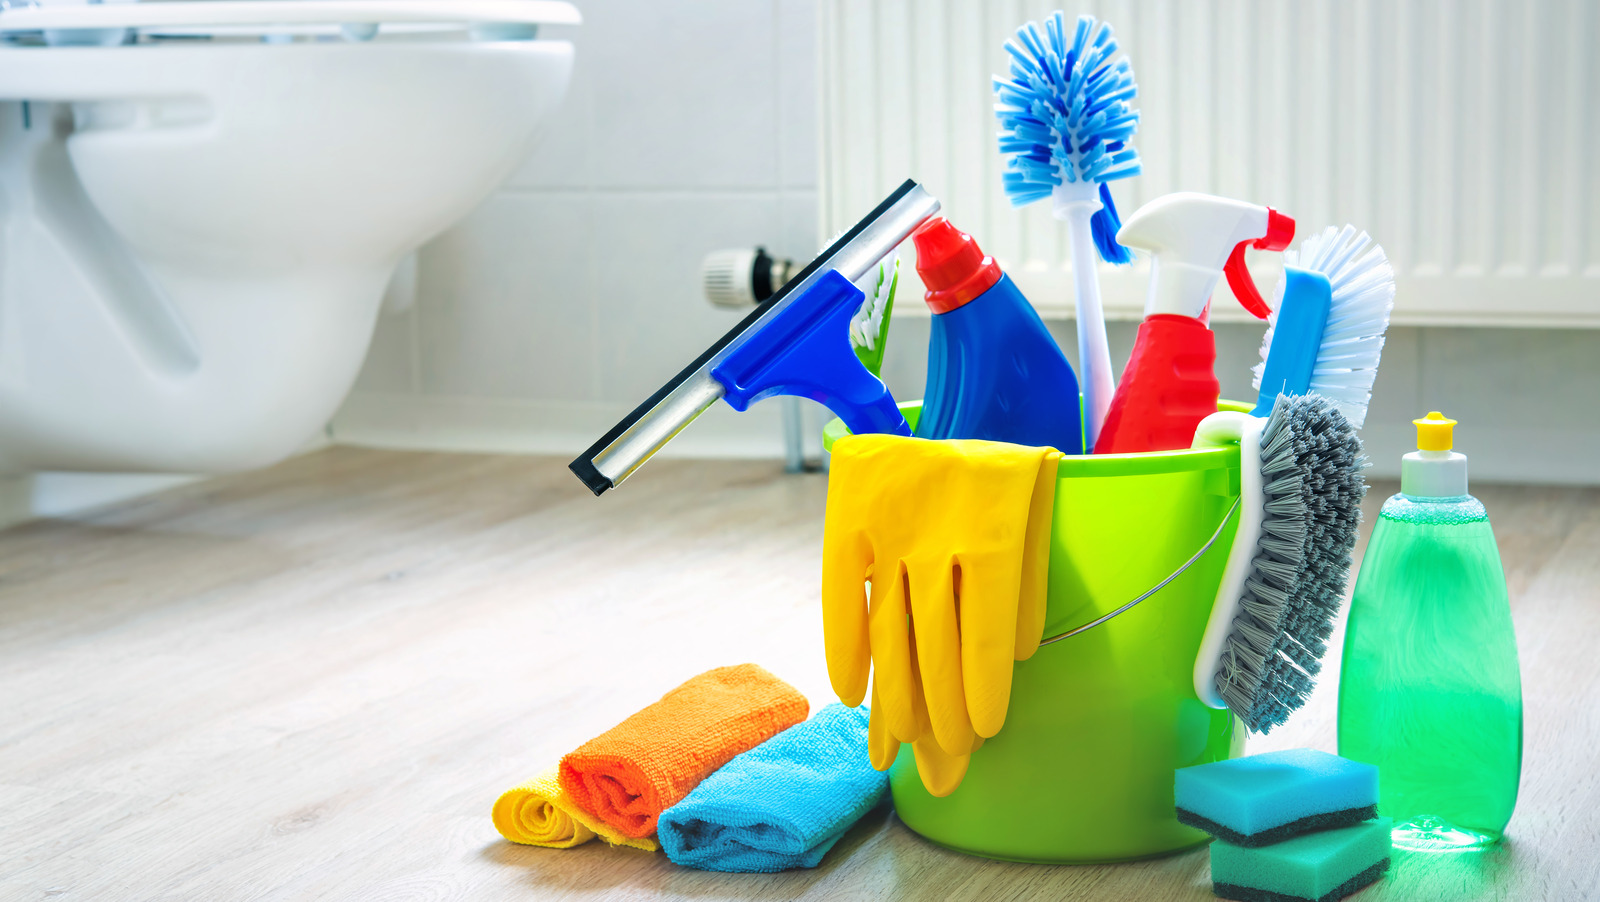 Pulizia bagno: ecco i 5 errori da evitare durante le pulizie - Ceramiche  Nuova Rivest S.r.l.